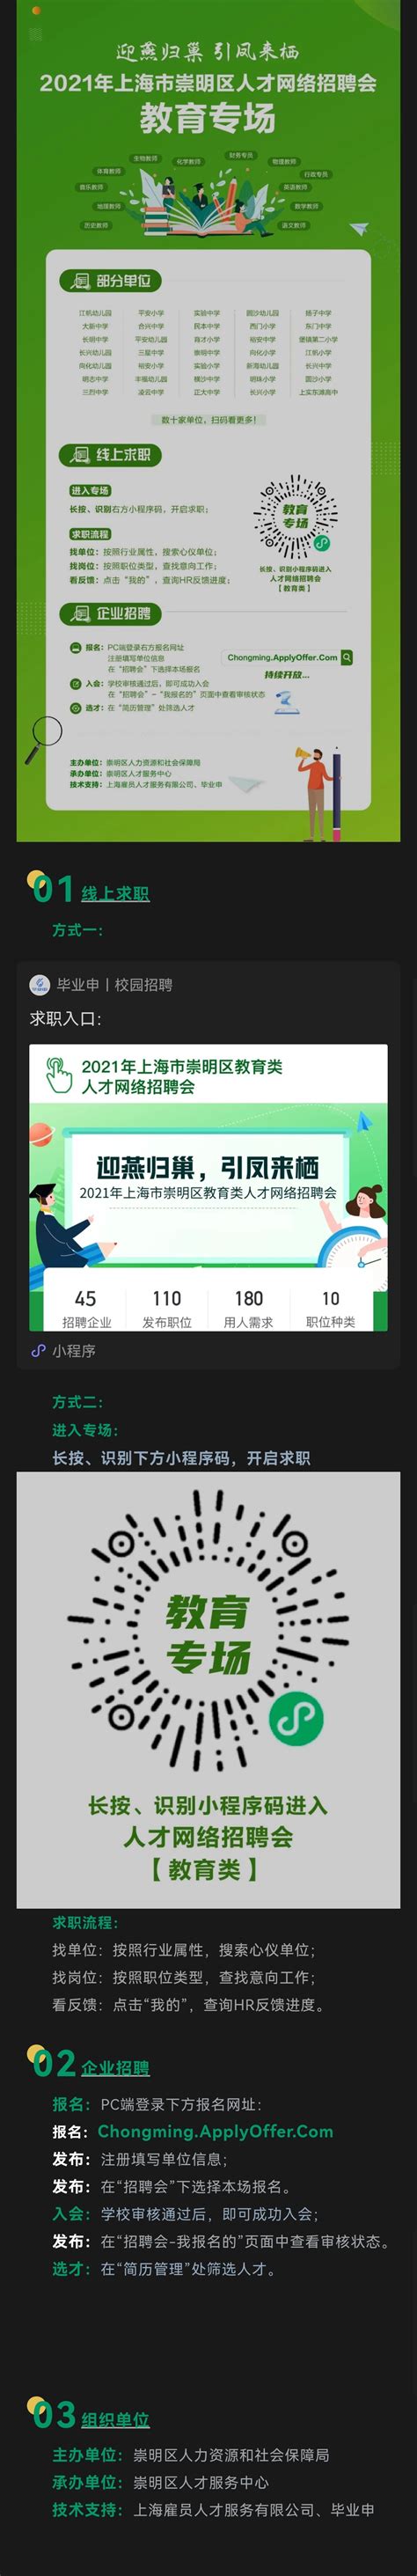 崇明区品质网站设计展示(上海市崇明区质量技术监督局)_V优客